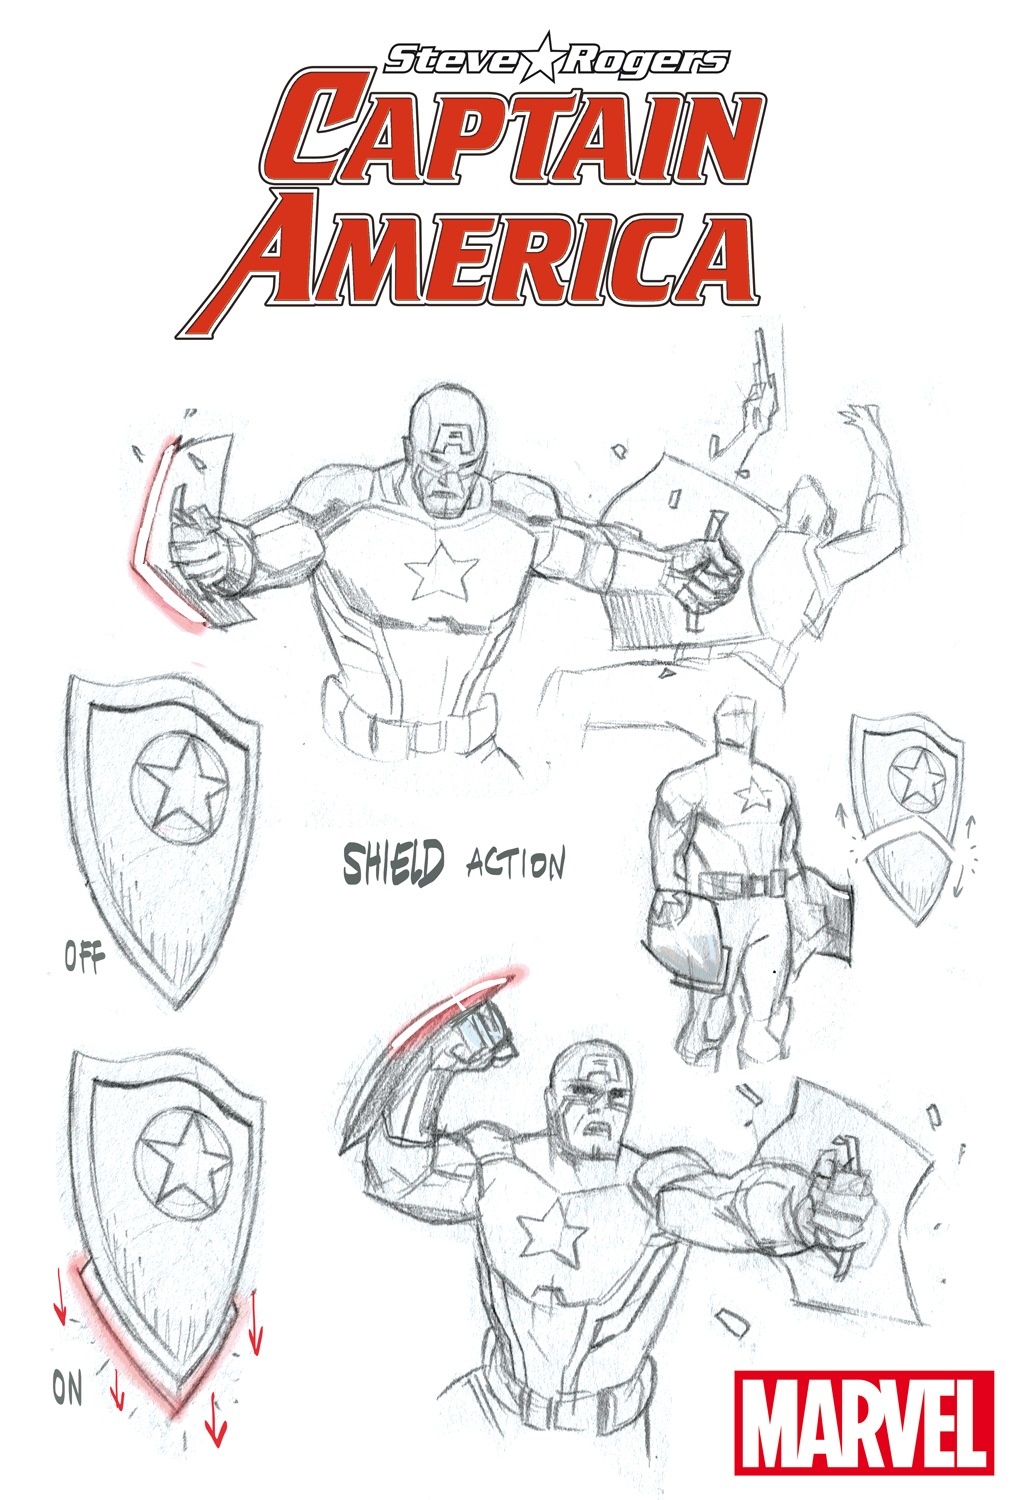 Captain America: Steve Rogers Character Design